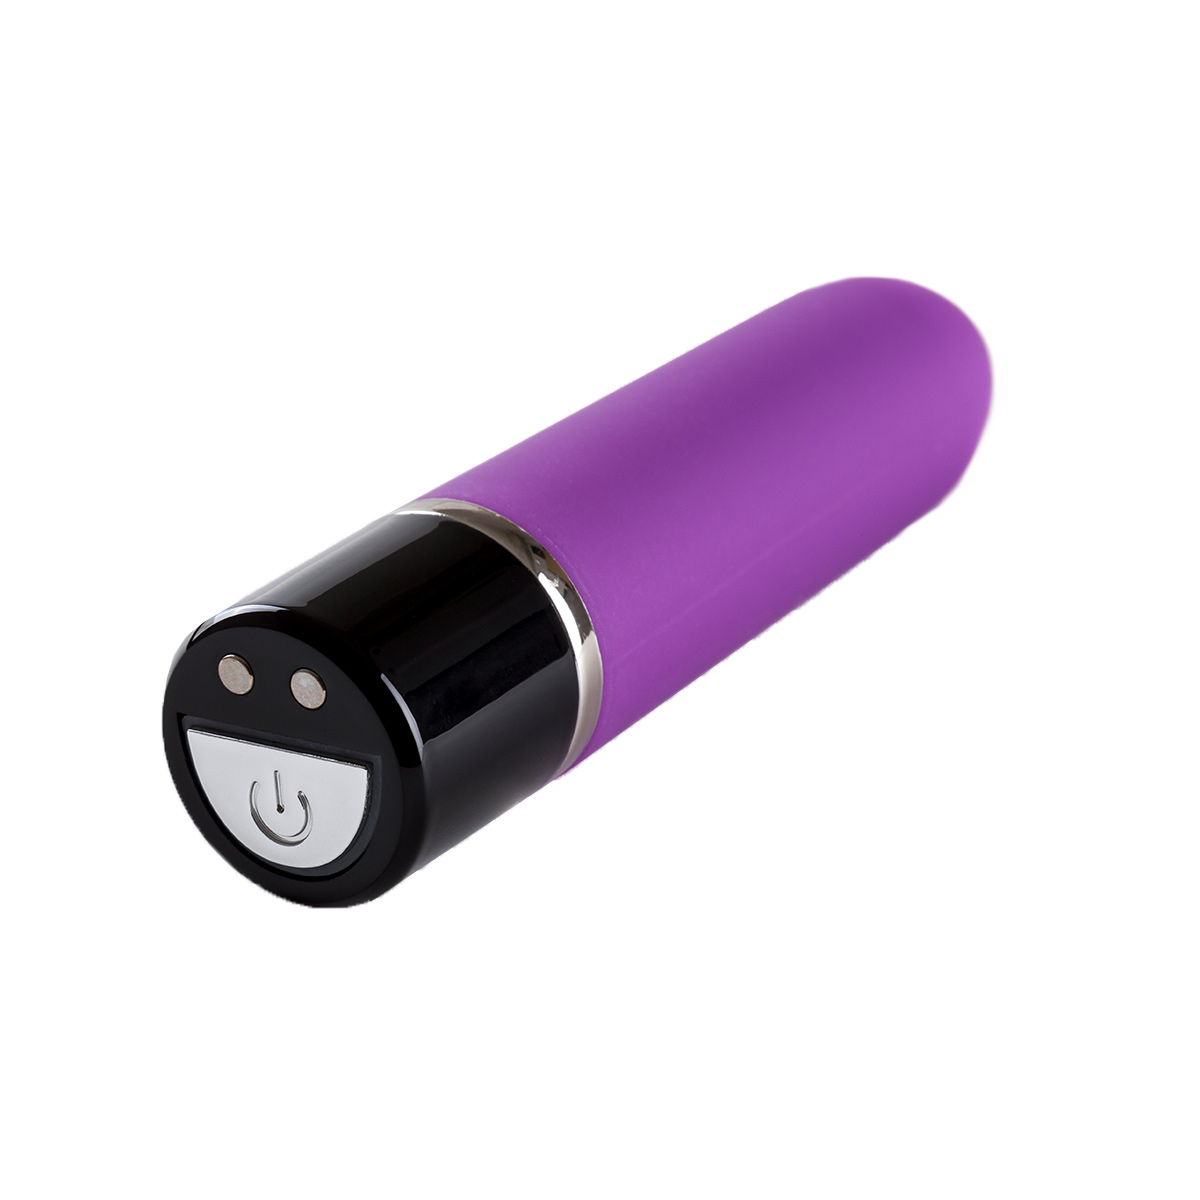 Vibrating-Bullet-Mag-Charge-V3-Purple-OPR-3090091-1